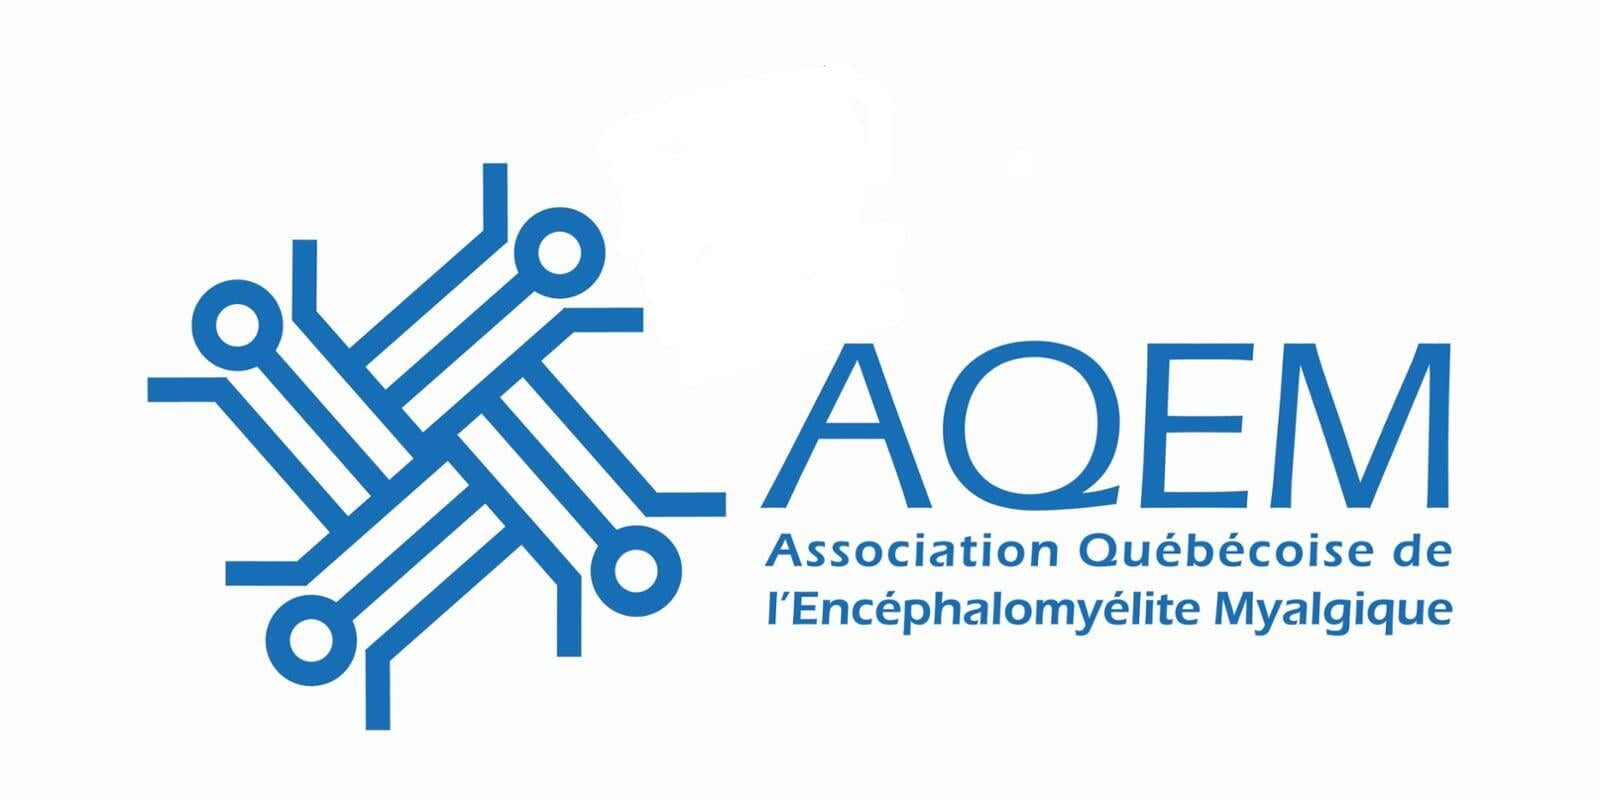 L'association québécoise de l'encéphalomyélite myalgique